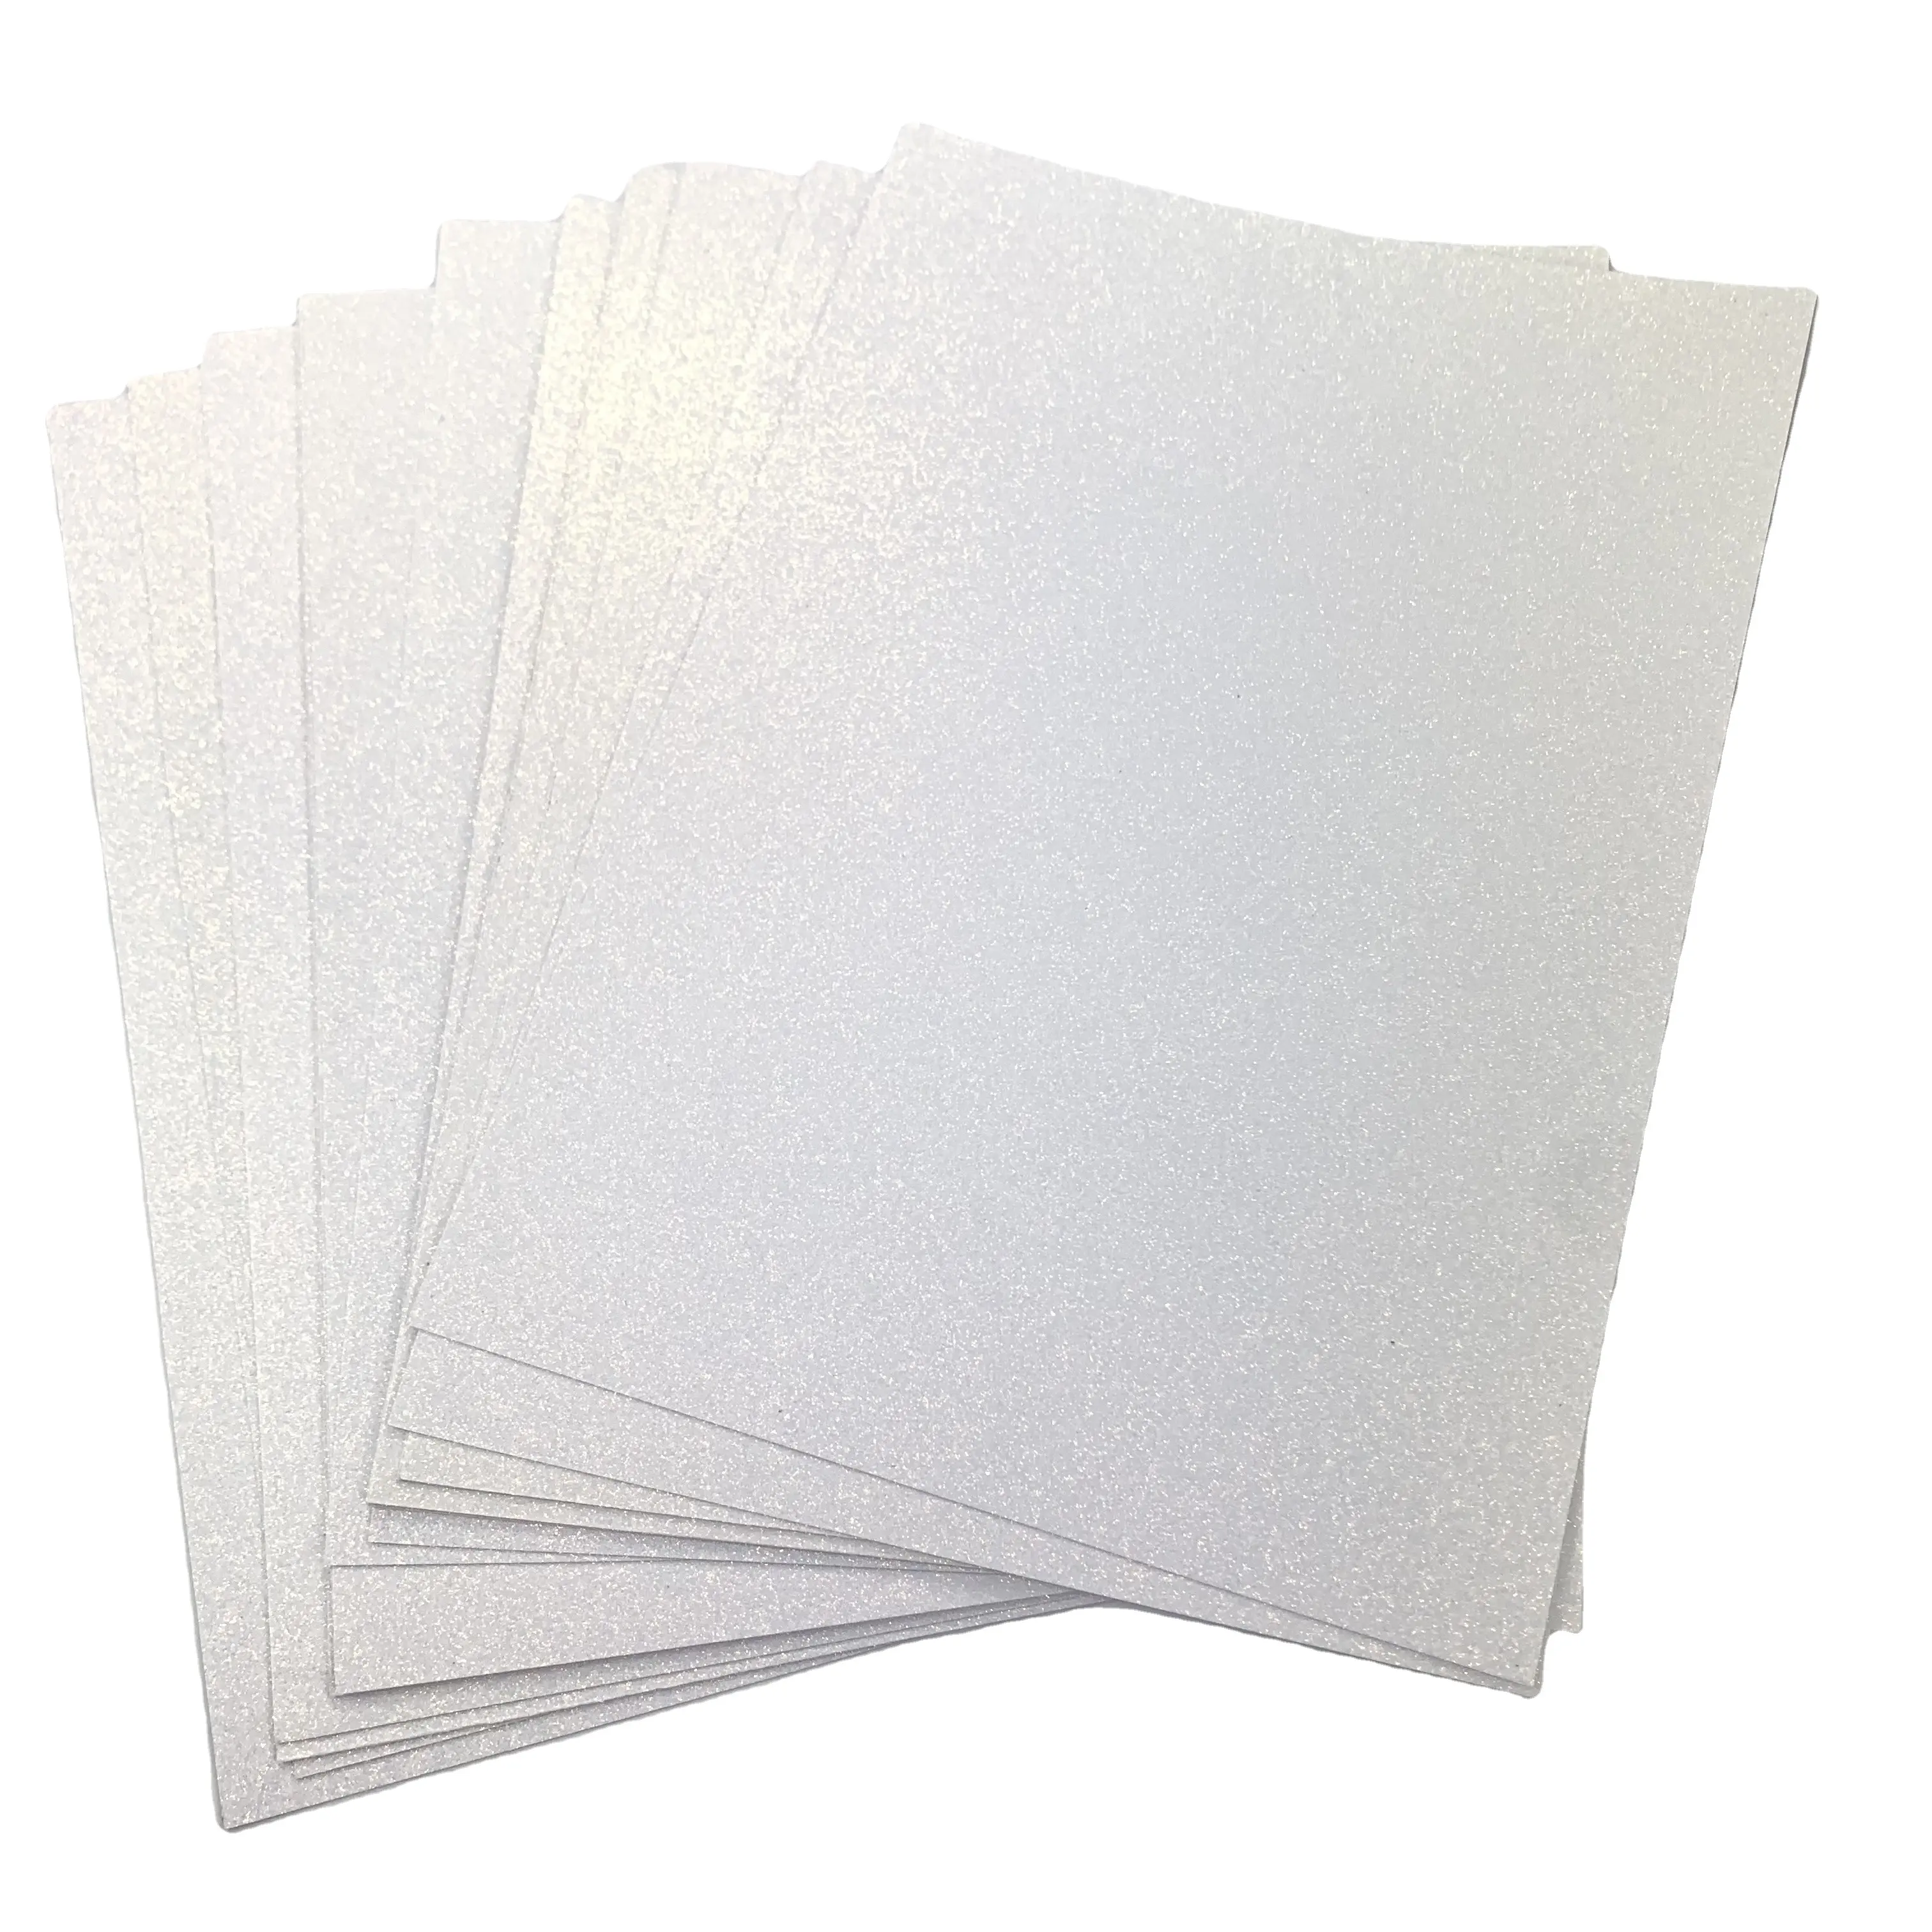 Personalizzato Multi colore bianco Glitter cartoncino carta ECO Friendly fai da te artigianato Glitter cartoncino all'ingrosso per confezioni regalo